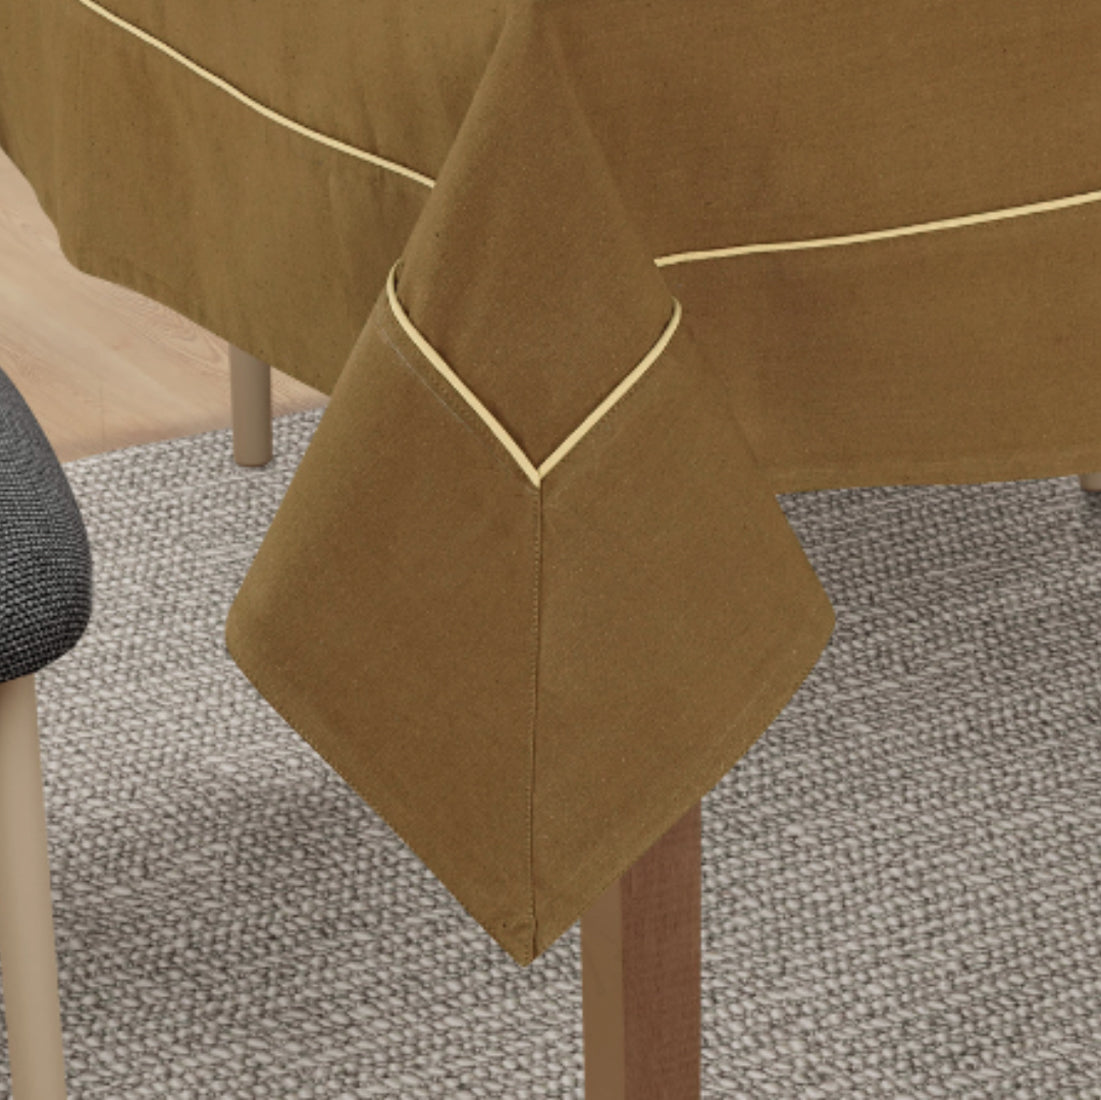 VIRGO Woven Cotton Plain Table Cover - Camel Brown